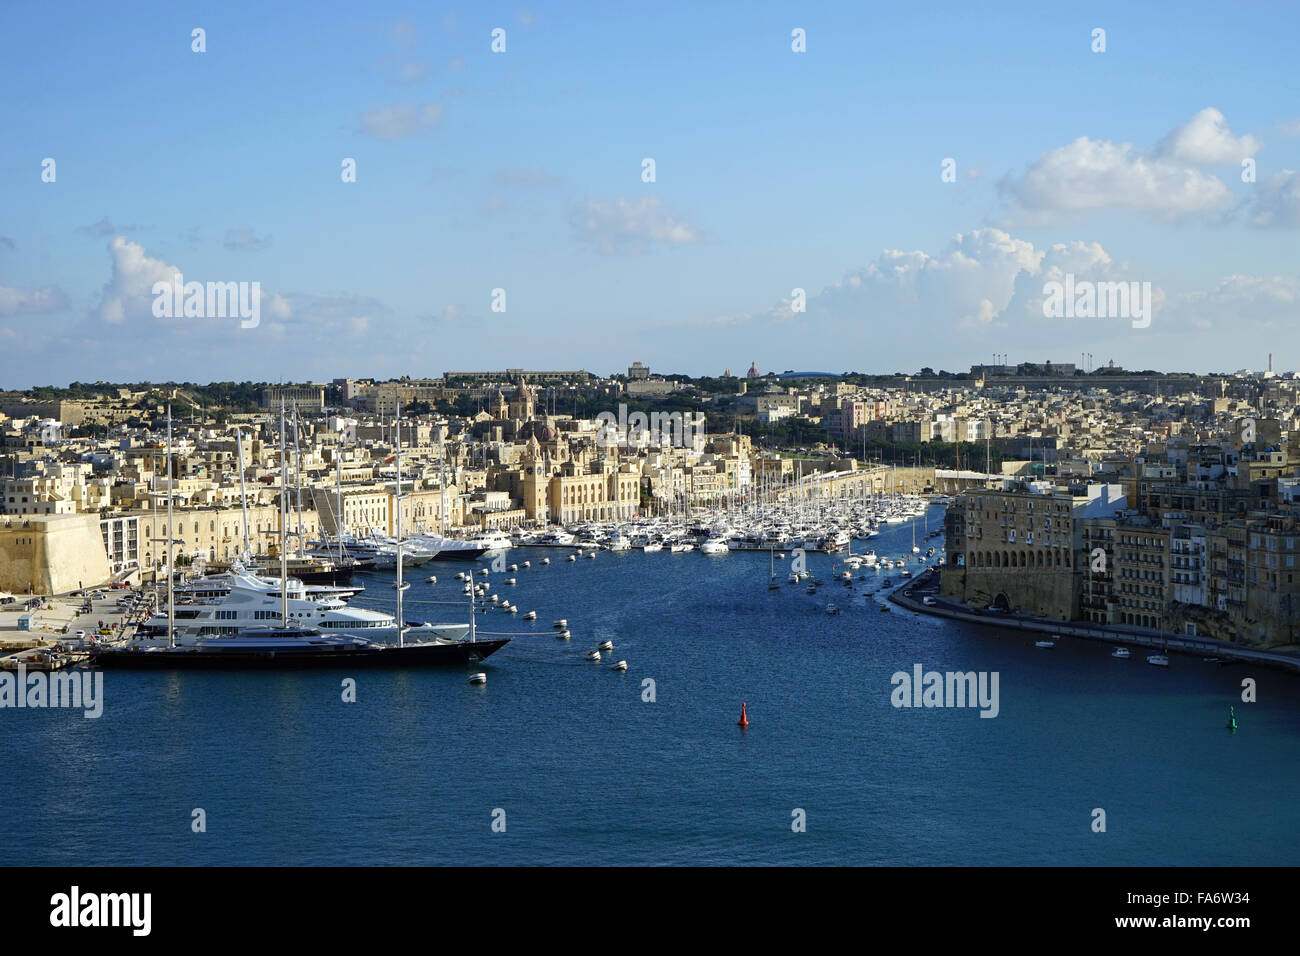 Boats in Harbor, Victoria, Gozo, Malta Stock Photo